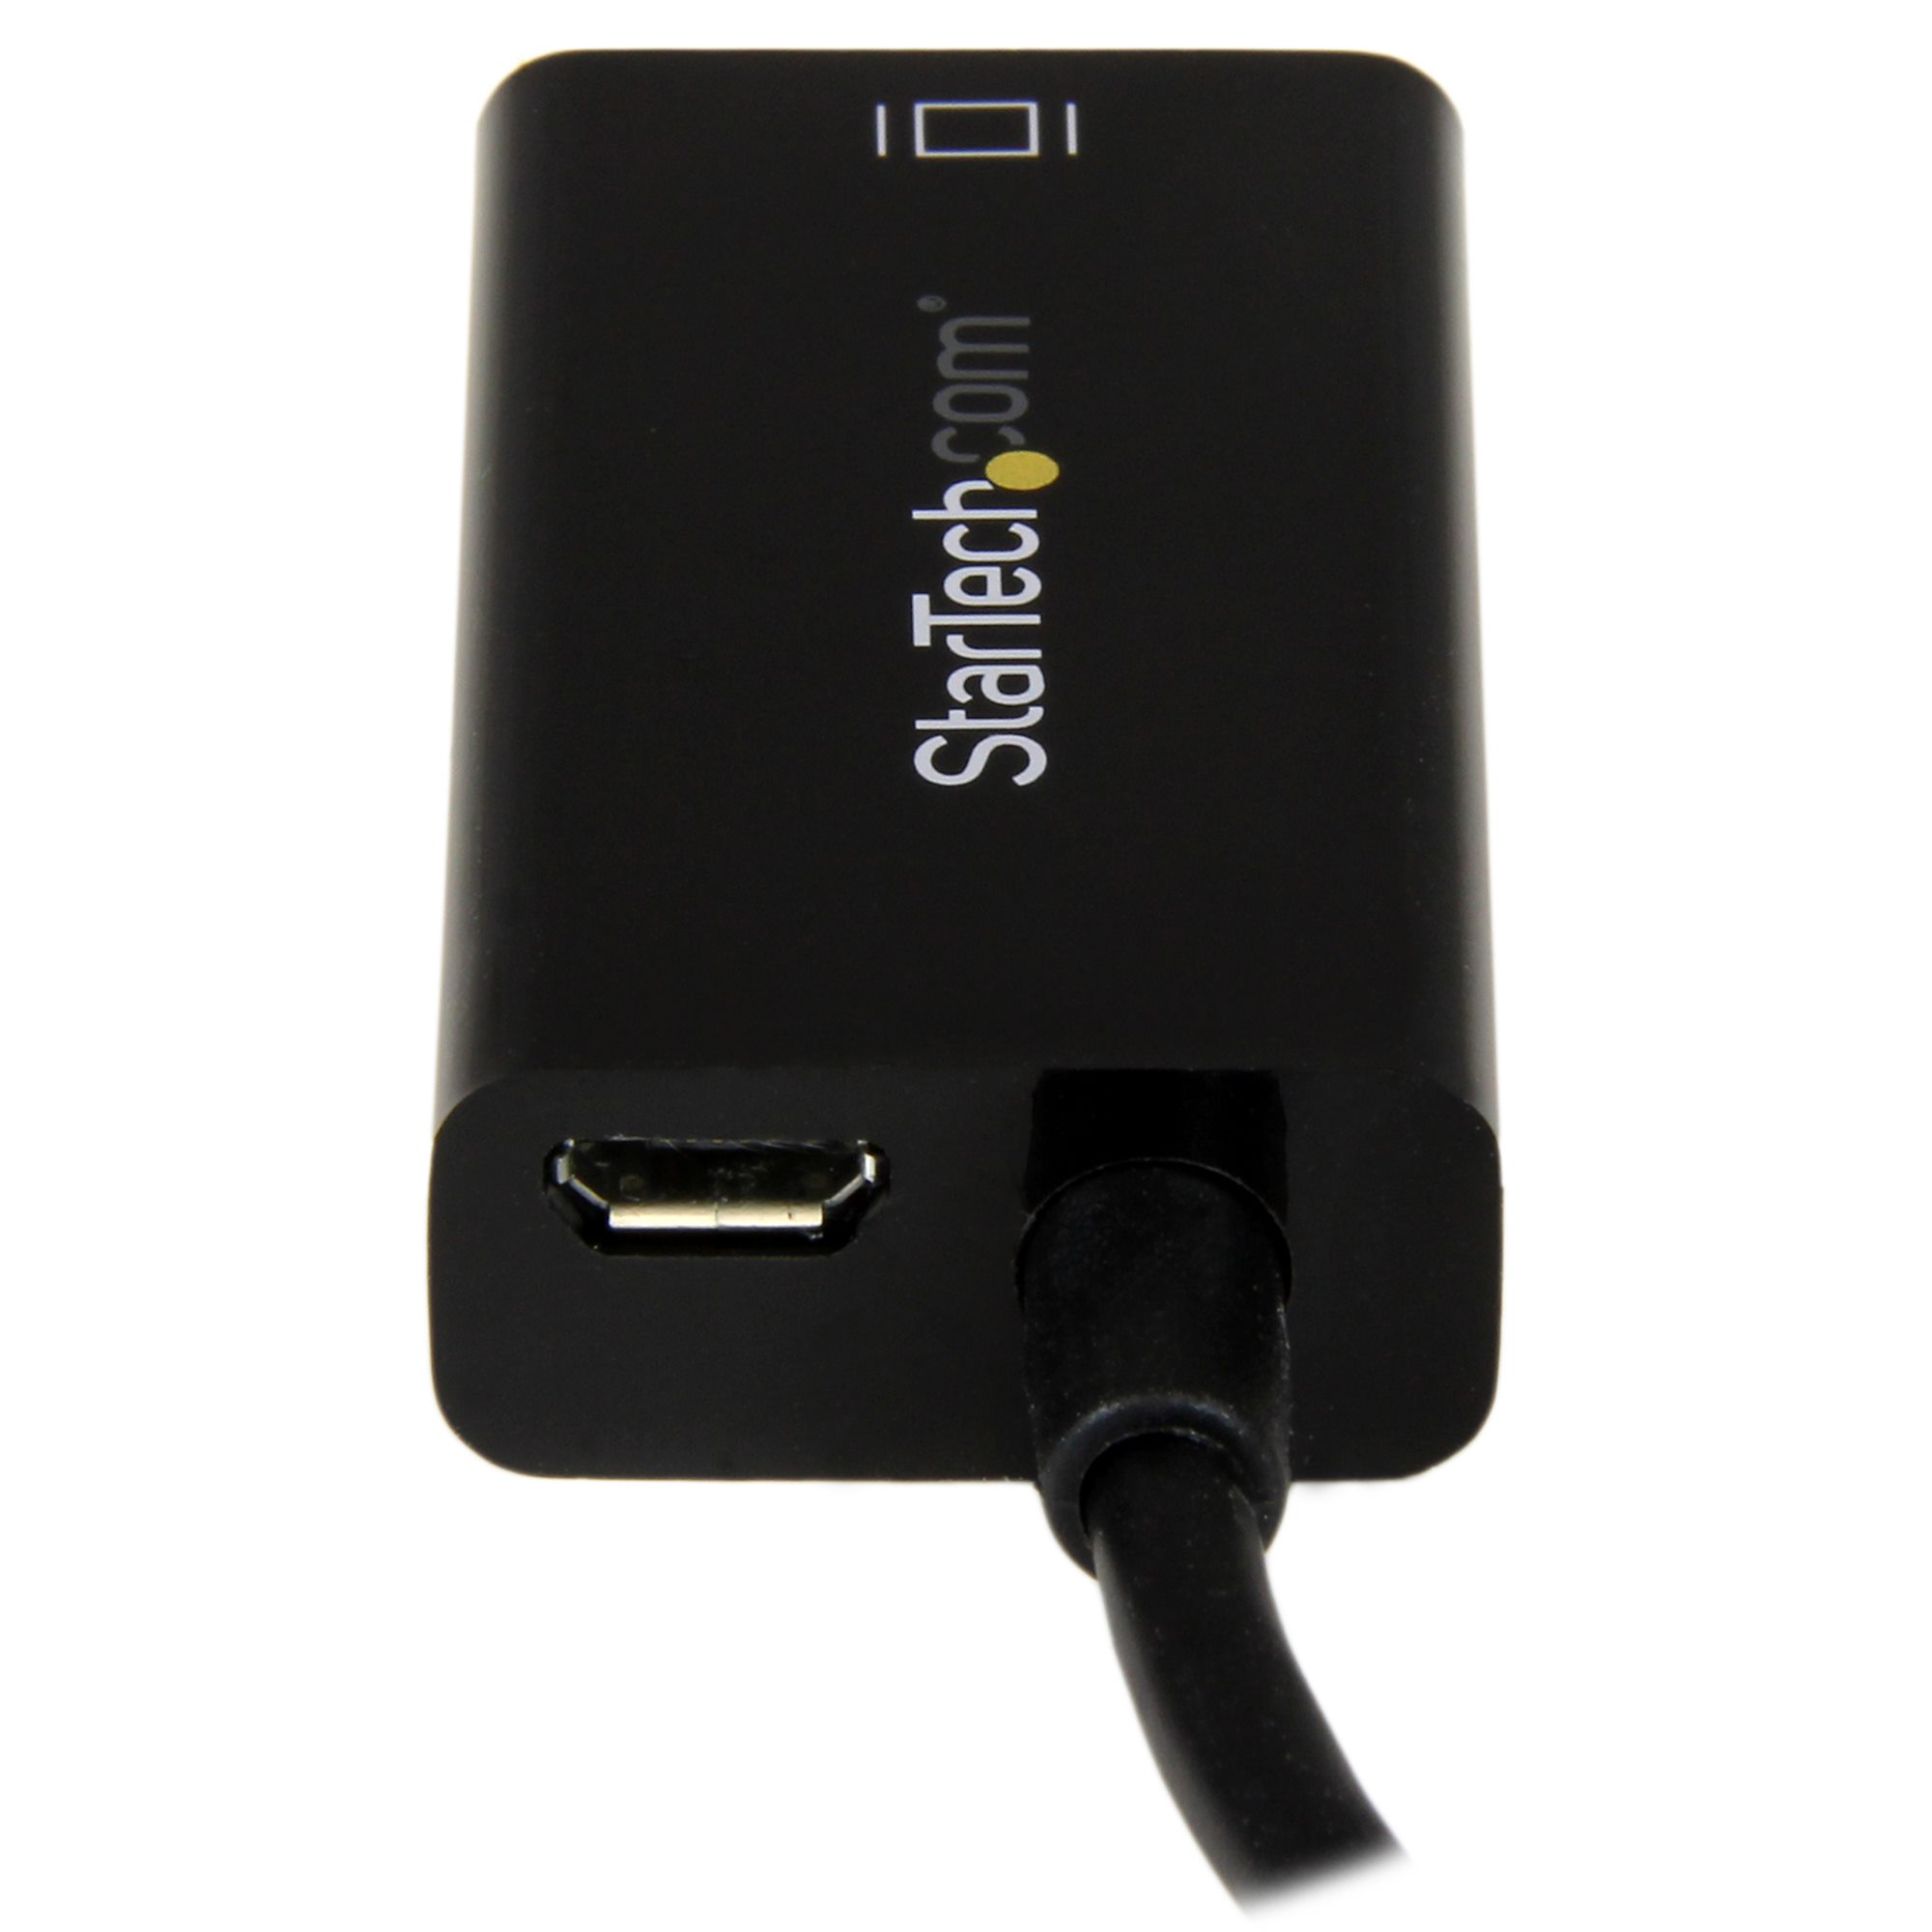 Adaptateur Mhl vers Hdmi pour Appareils Android Adaptateur Micro-USB  Adaptateurs USB-vers-USB Adaptateur Usbc Type C vers Hdmi Câble USB 3.1  pour